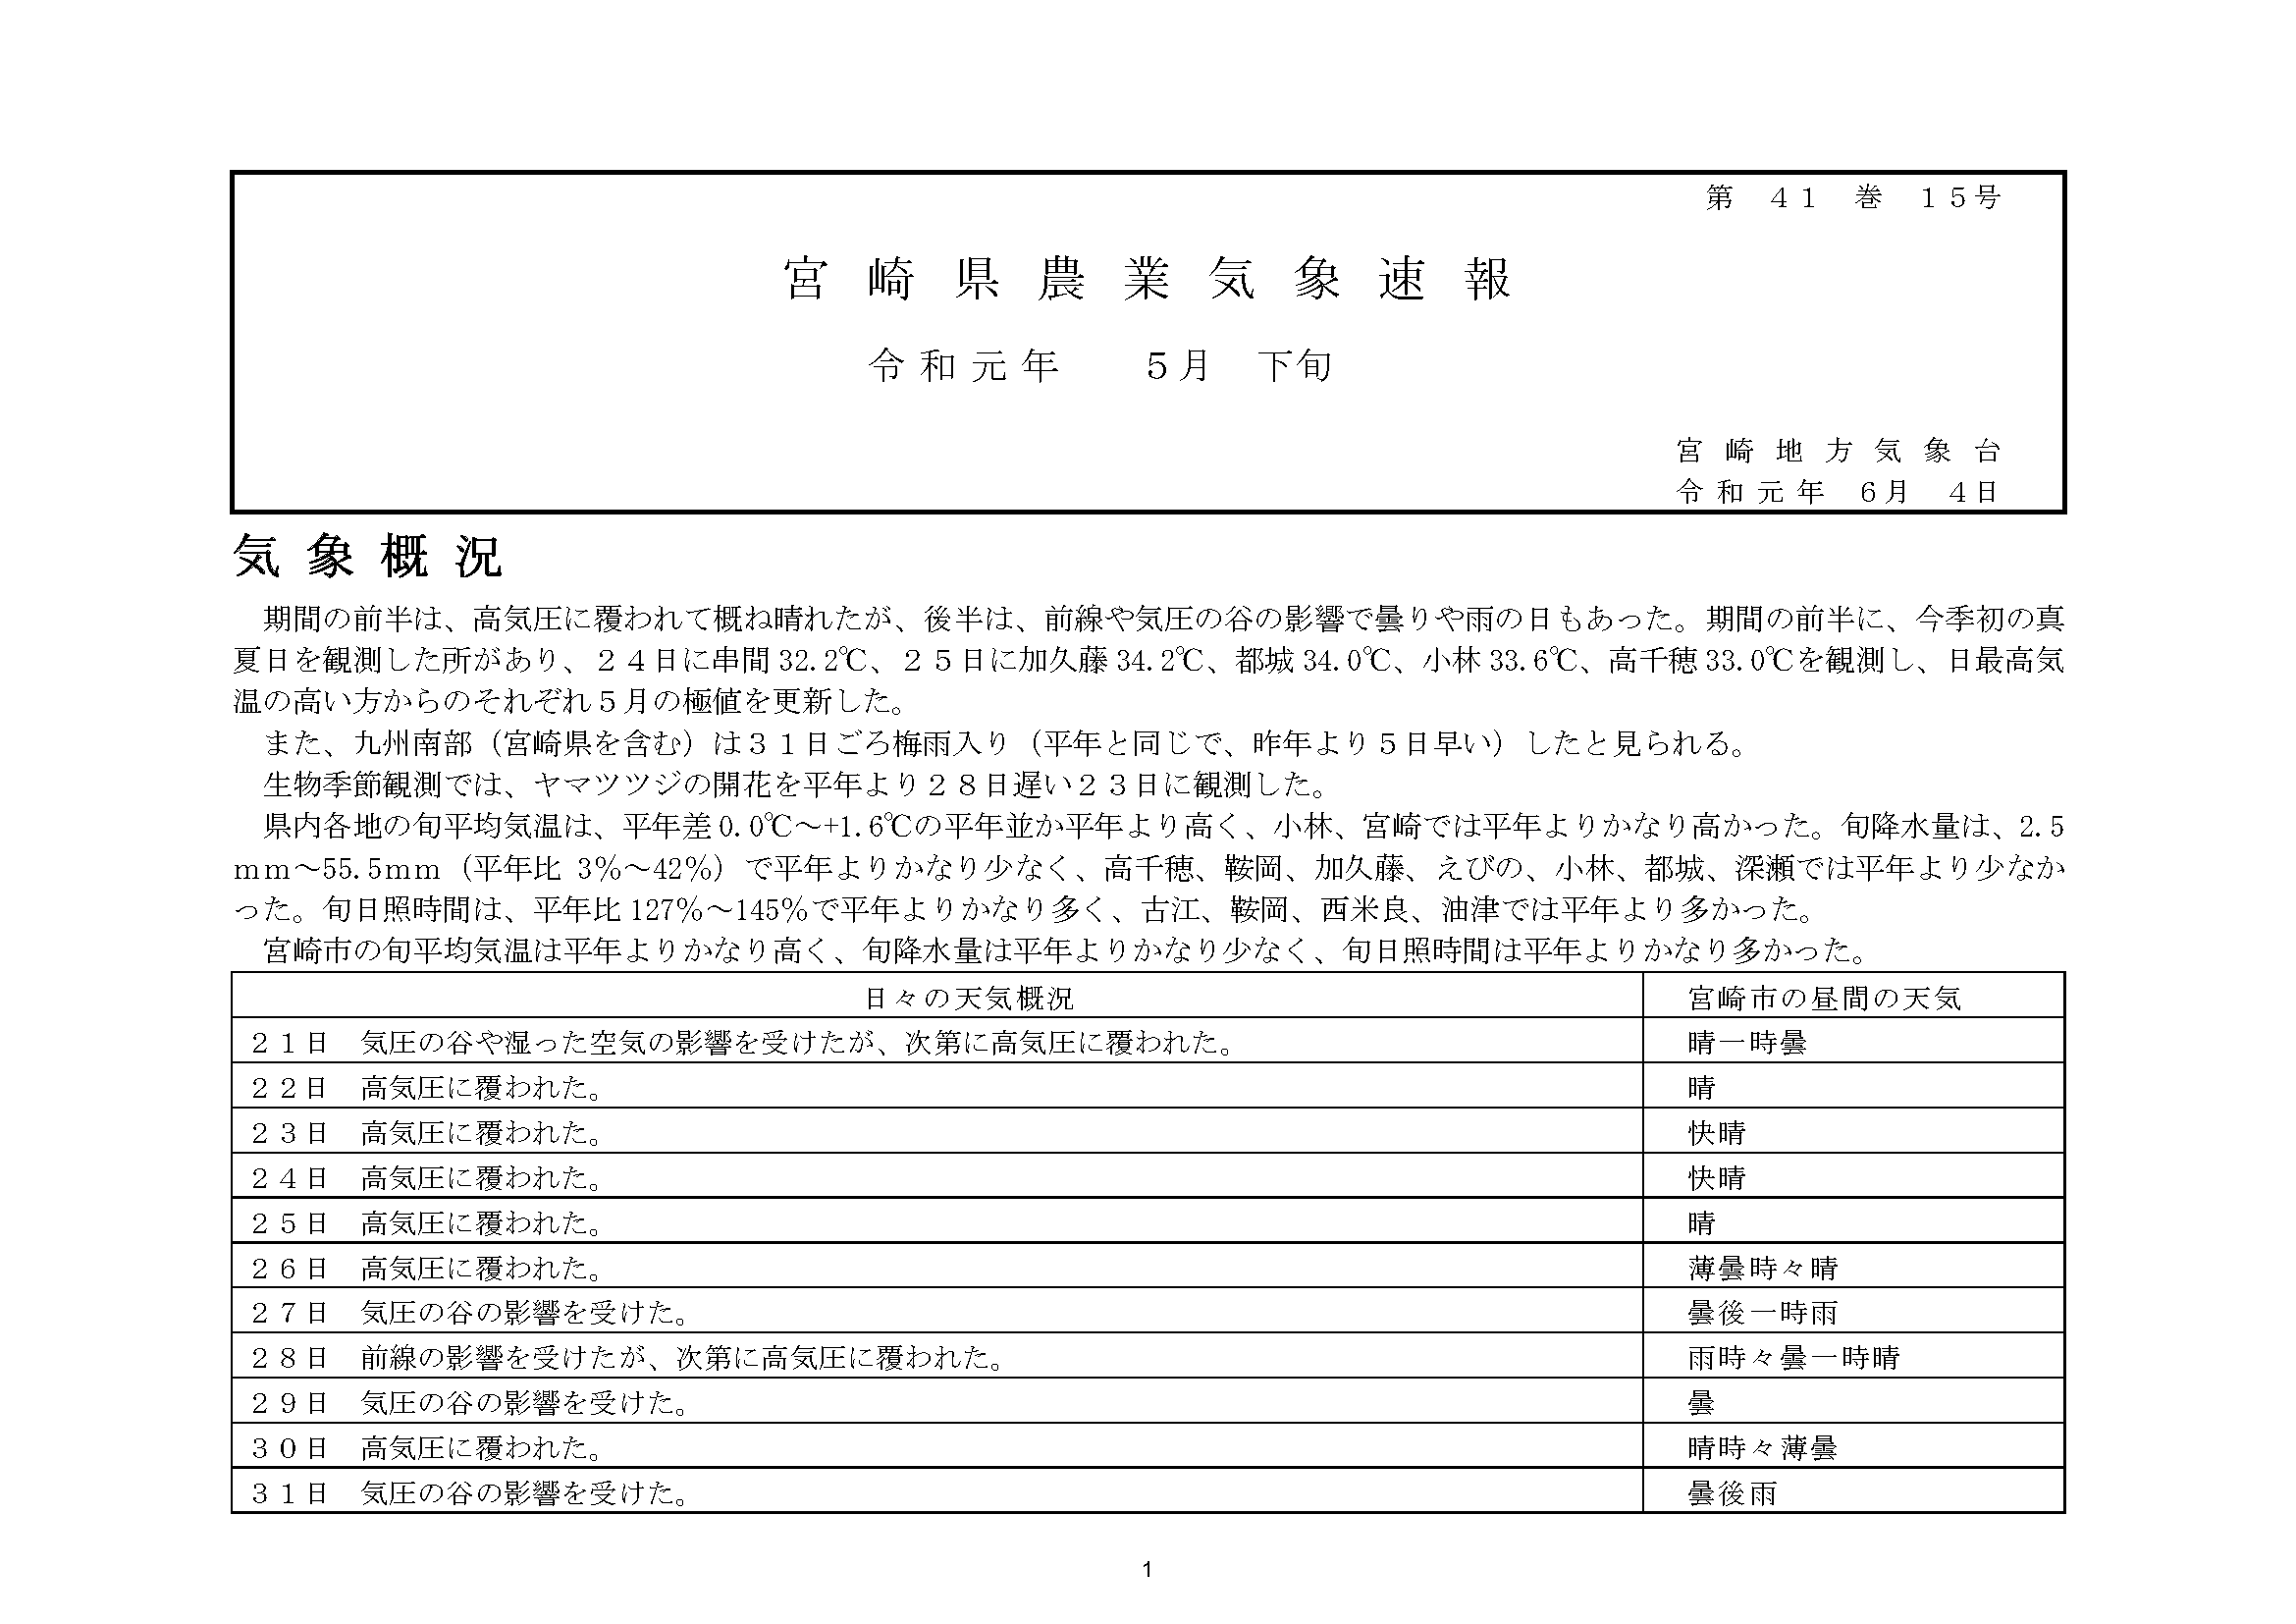 宮崎県農業気象速報平成31年5月下旬PDF